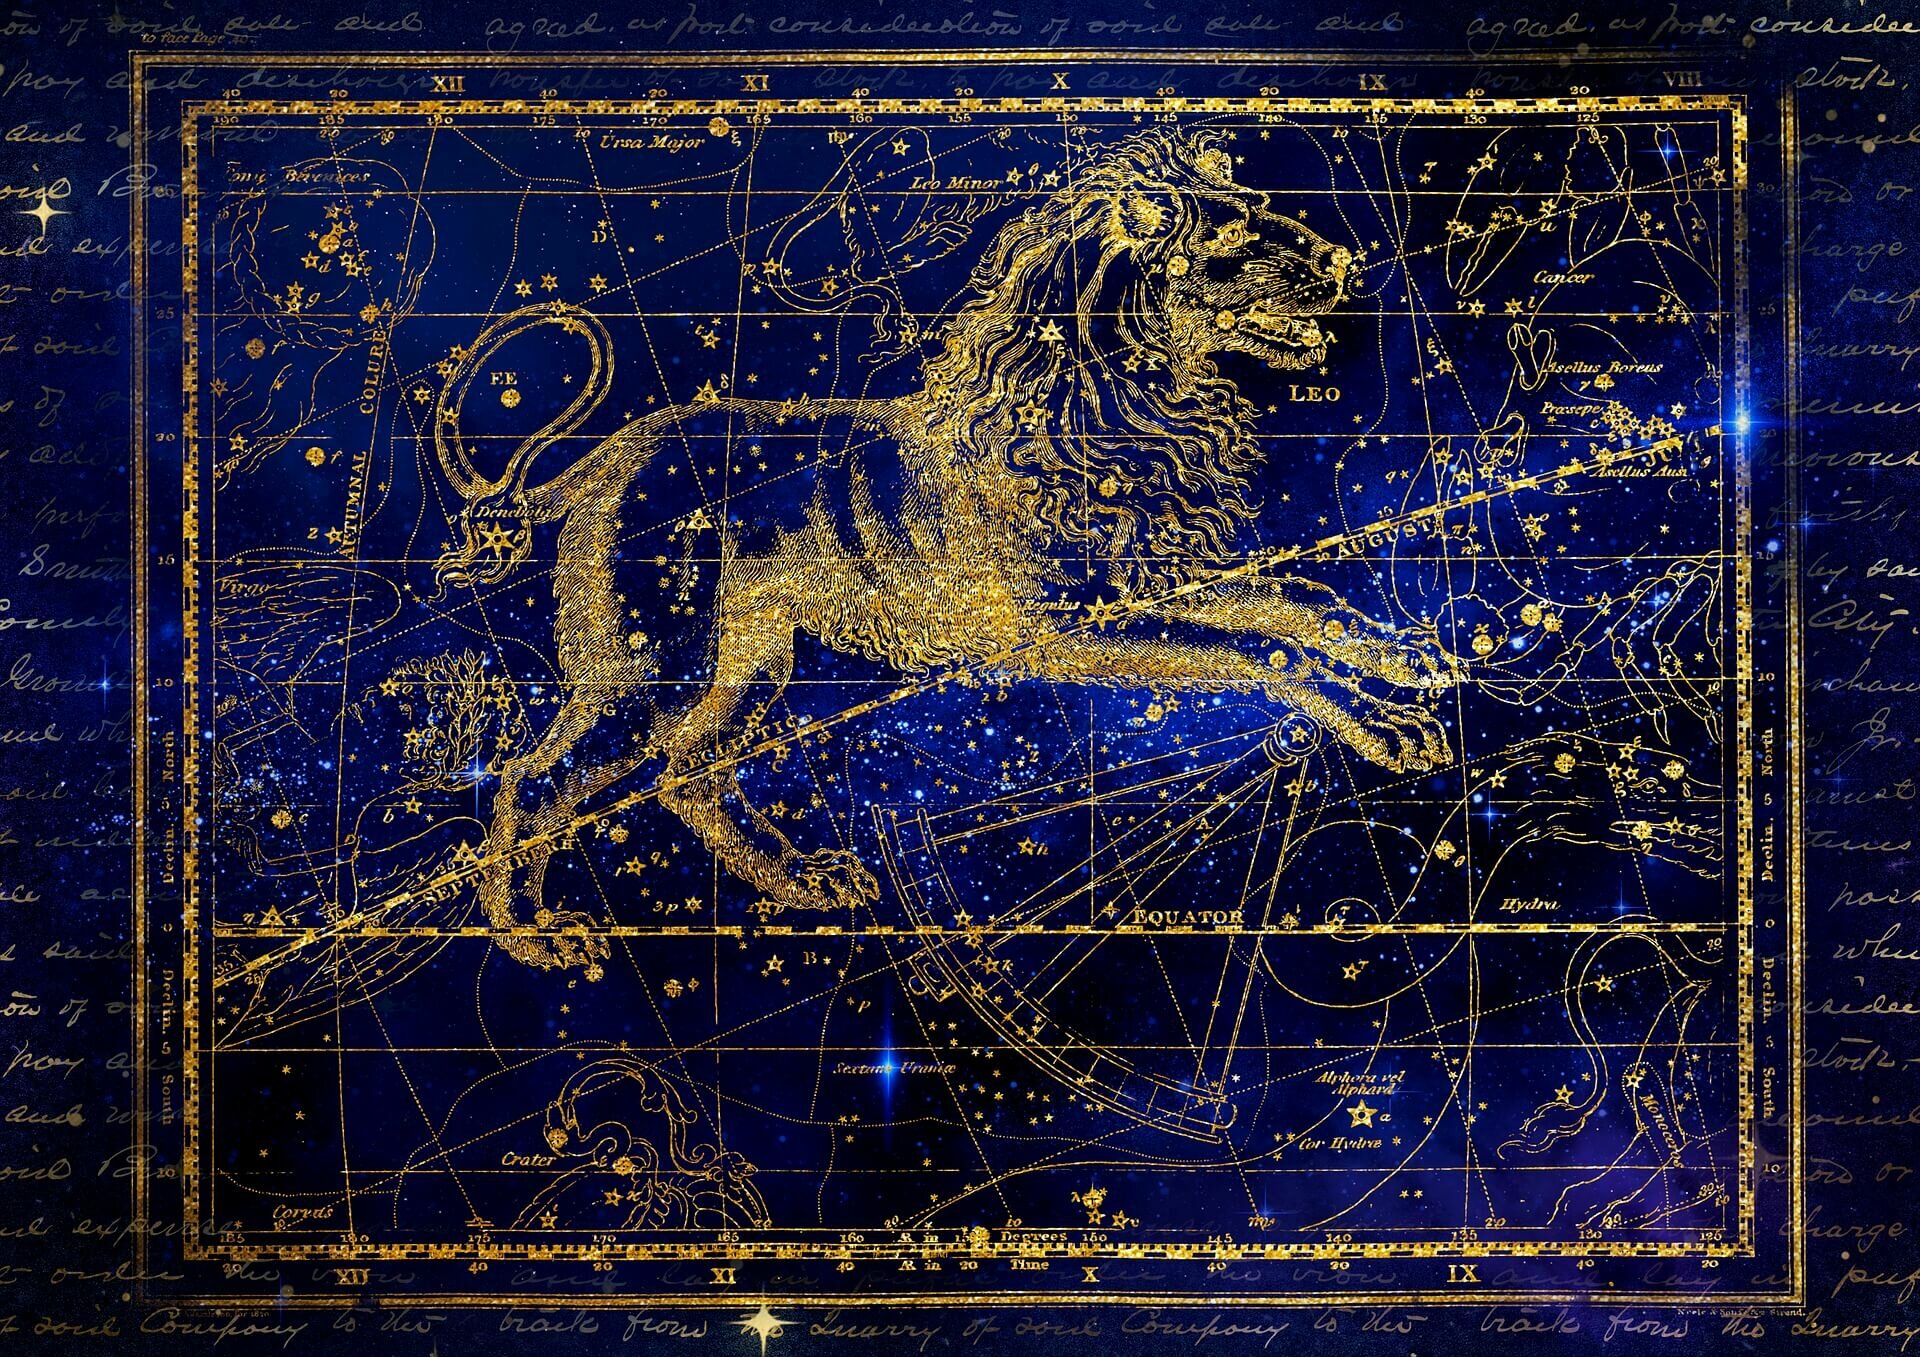 Signo de Leão: A majestade do zodíaco